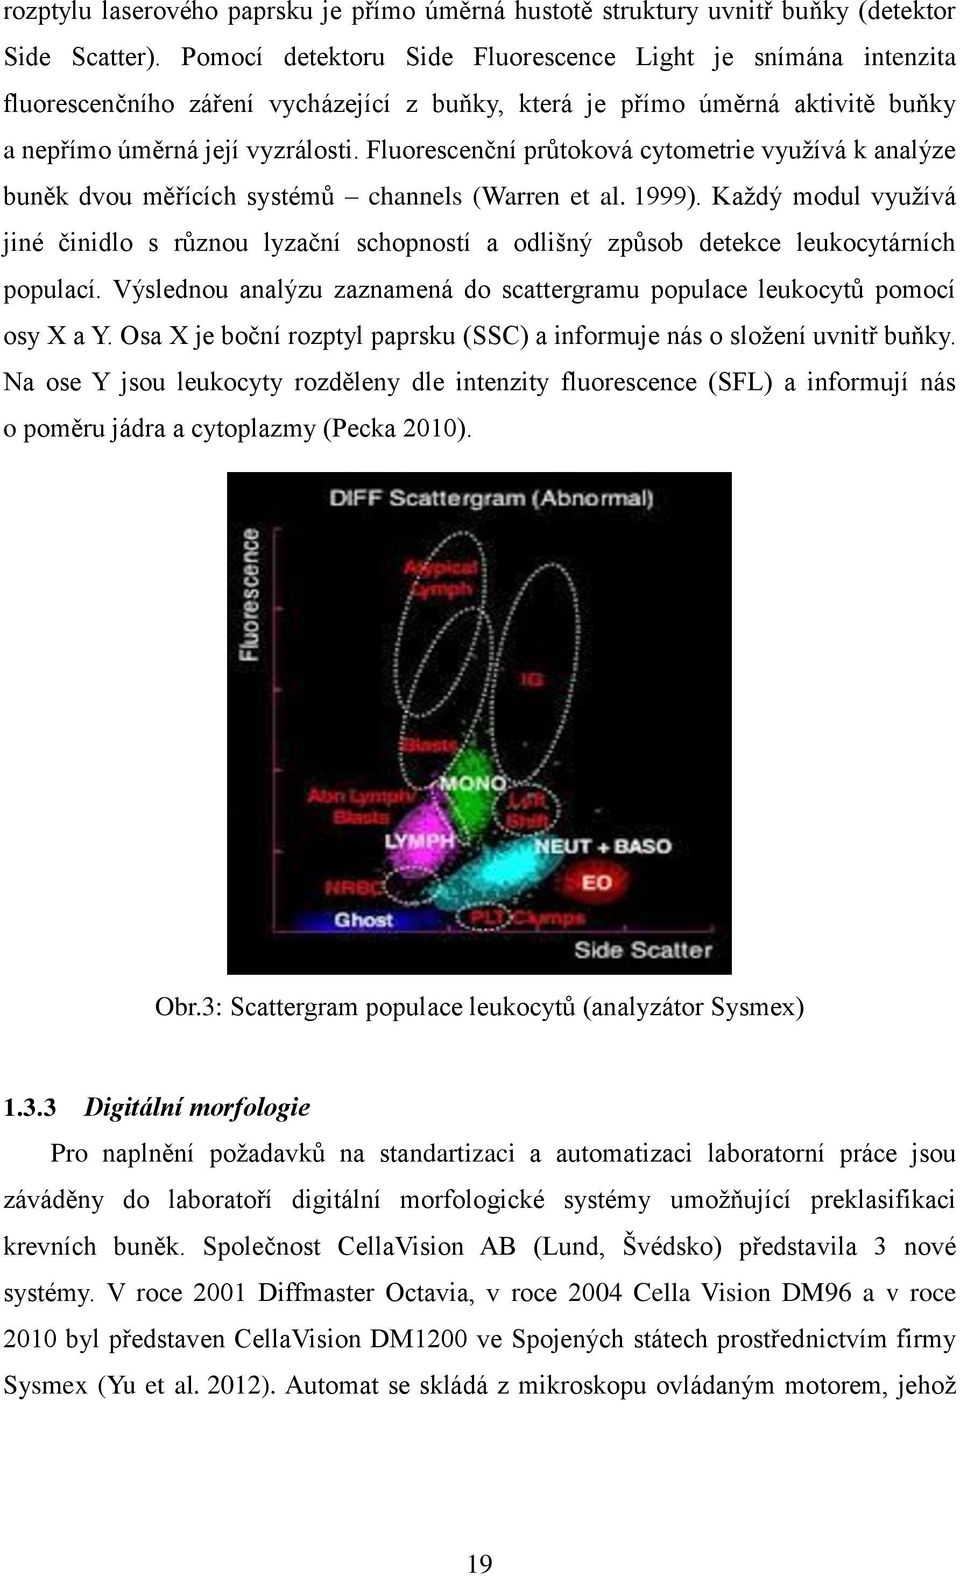 Fluorescenční průtoková cytometrie využívá k analýze buněk dvou měřících systémů channels (Warren et al. 1999).